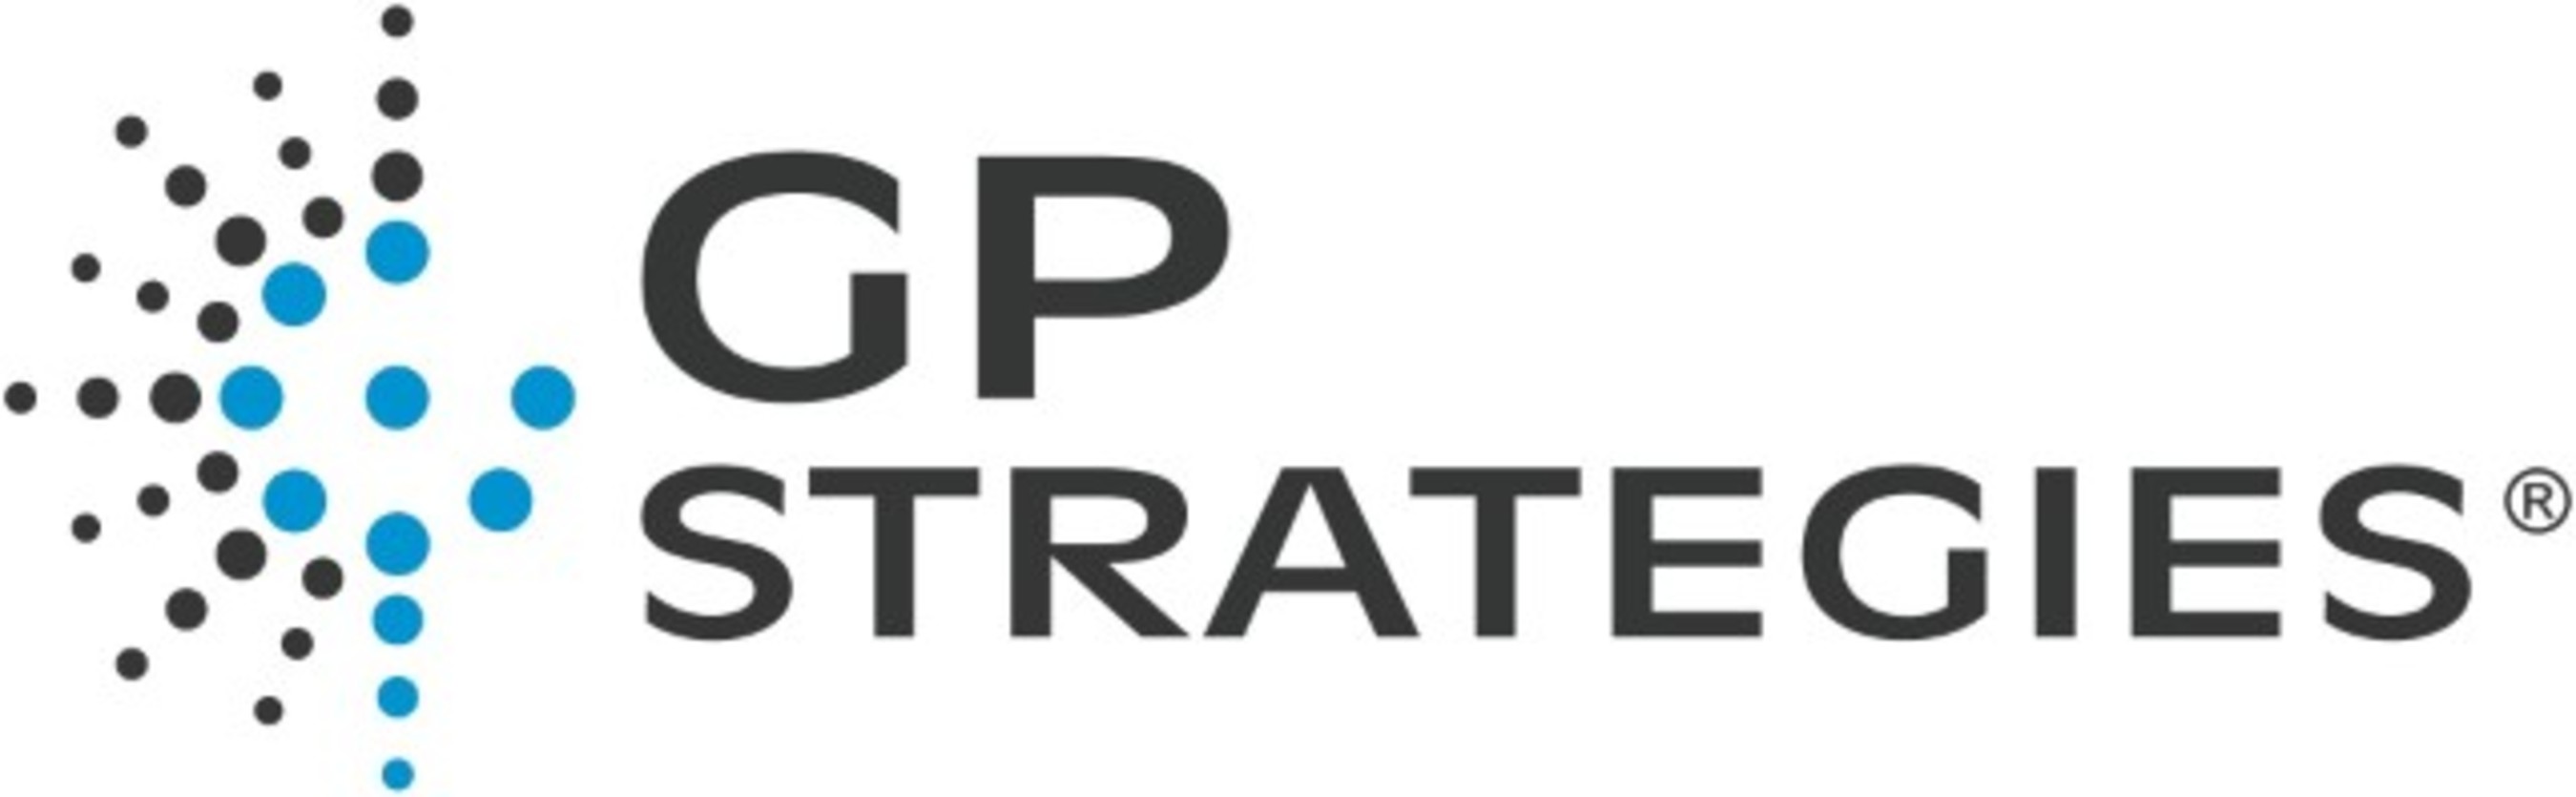 GP Strategies Corporation logo. (PRNewsFoto/GP Strategies Corporation) (PRNewsFoto/)